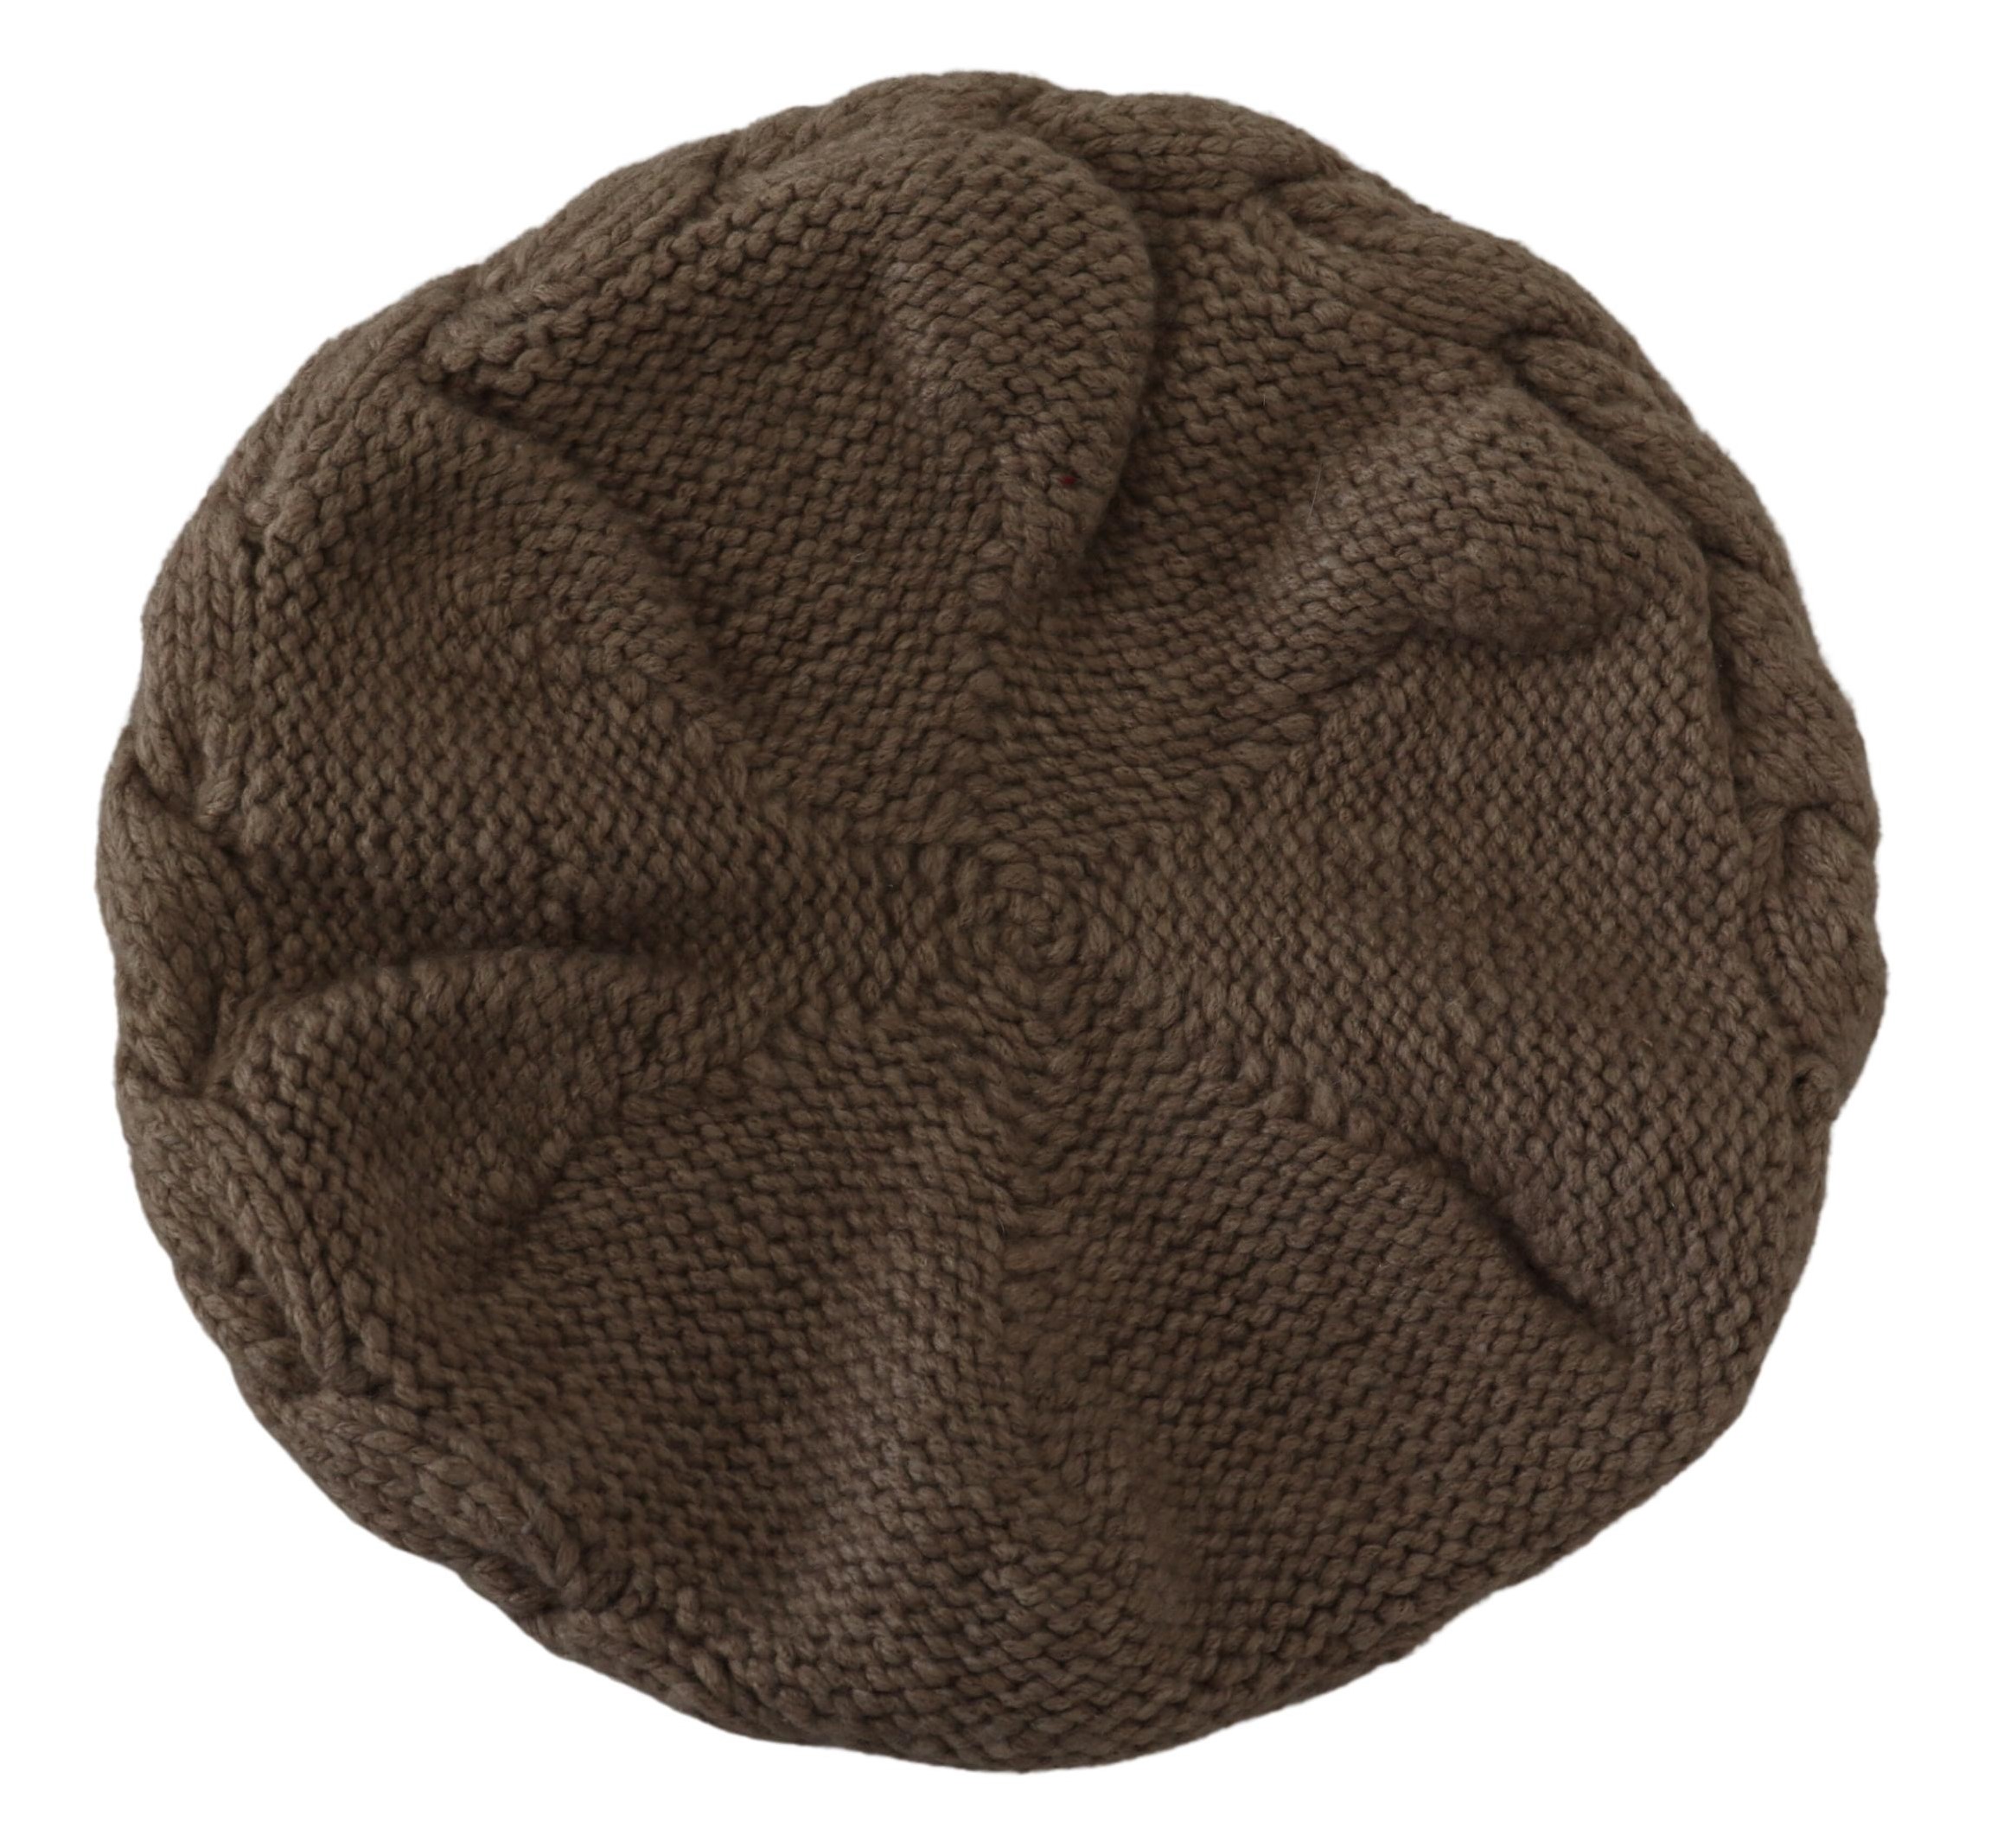 Brown Cashmere Knit Women Winter Beanie Cap Hat